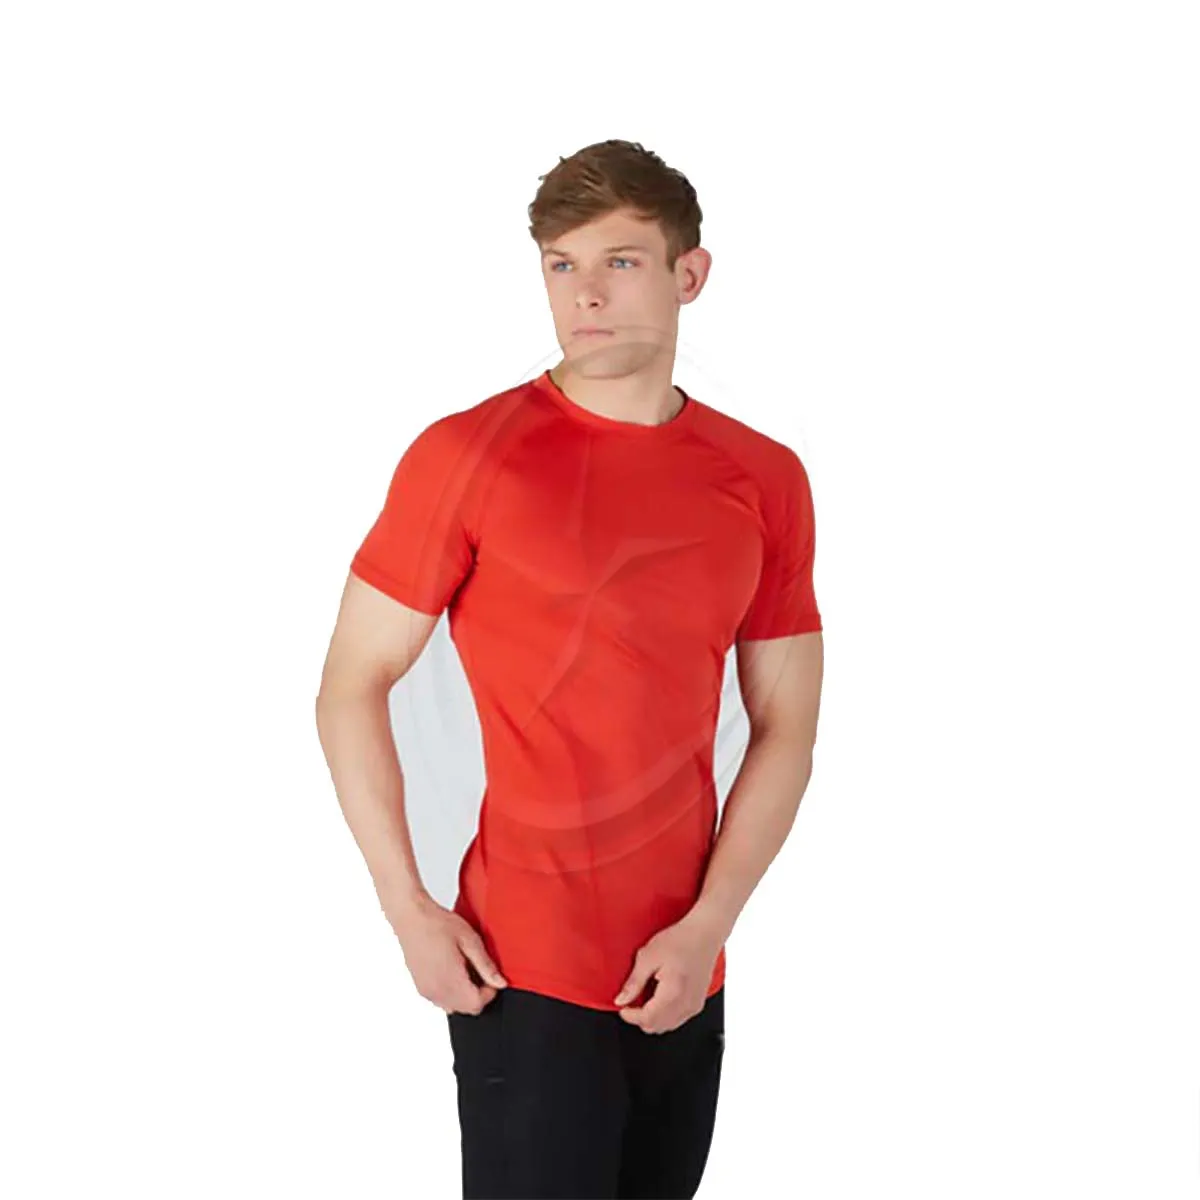 Kaus olahraga kebugaran pria, baju senam lengan pendek elastis atasan olahraga kebugaran cepat kering